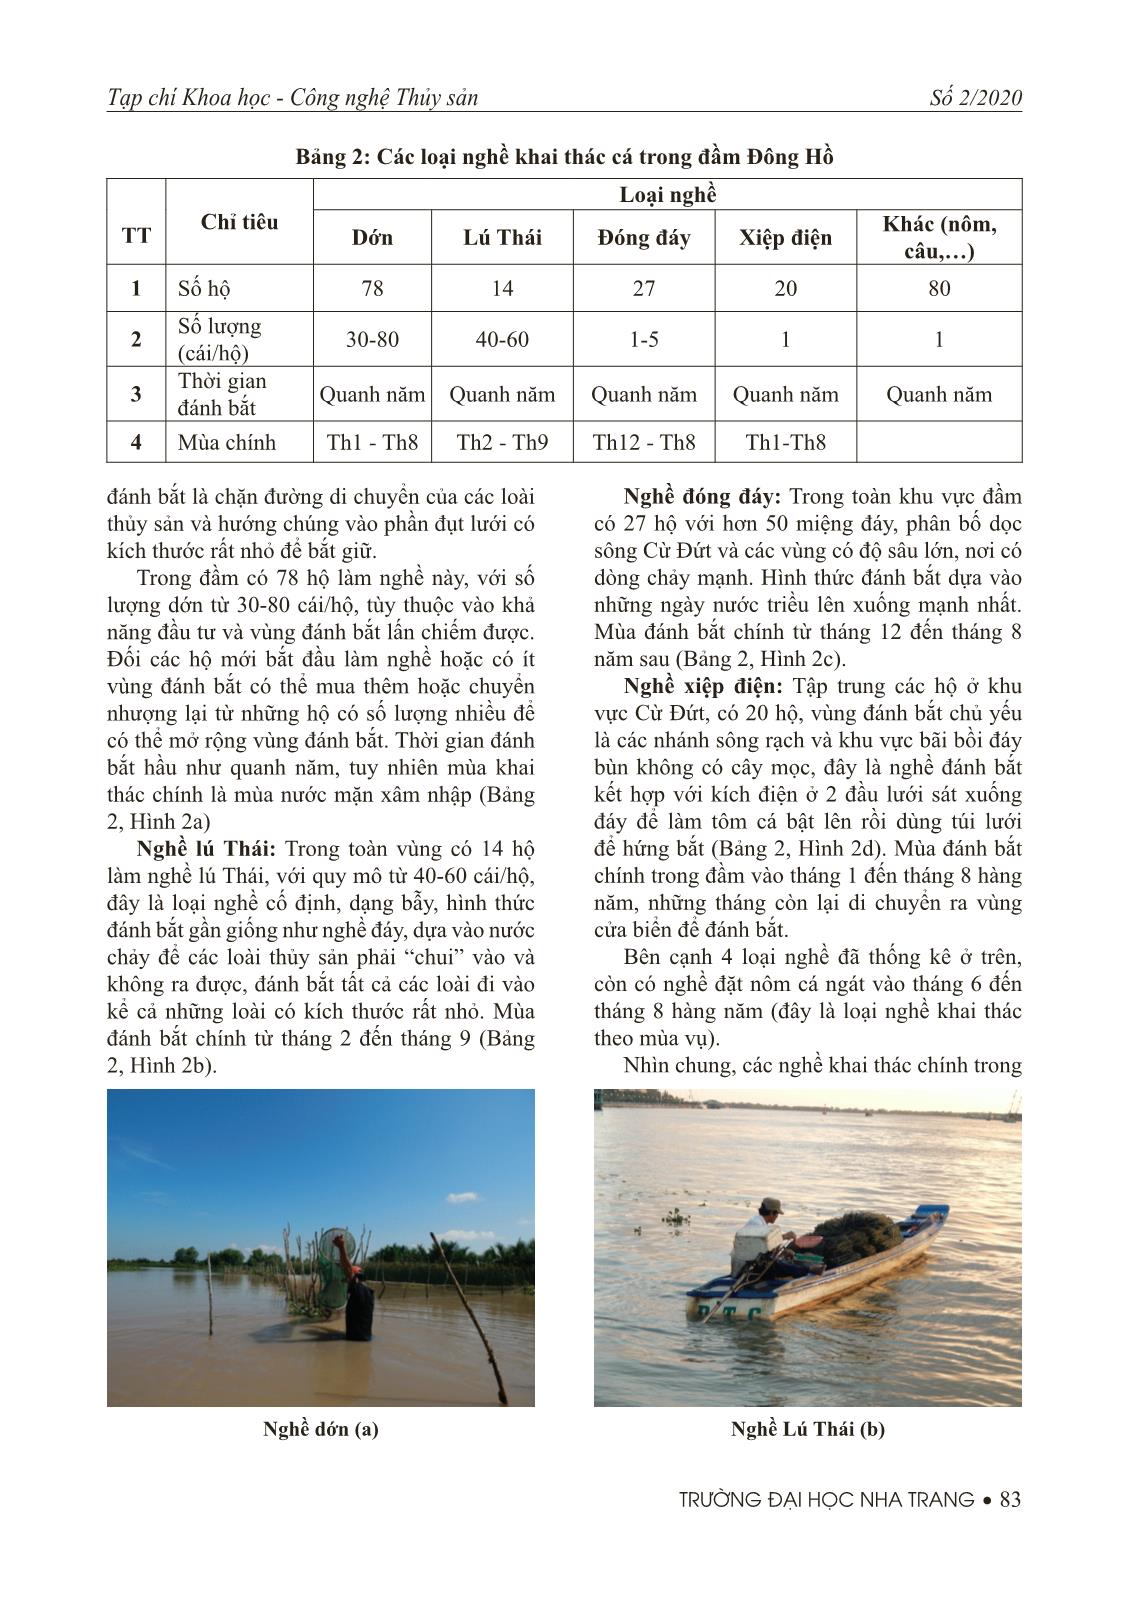 Thành phần loài và các loại nghề khai thác cá ở đầm Đông Hồ, Hà Tiên tỉnh Kiên Giang trang 5